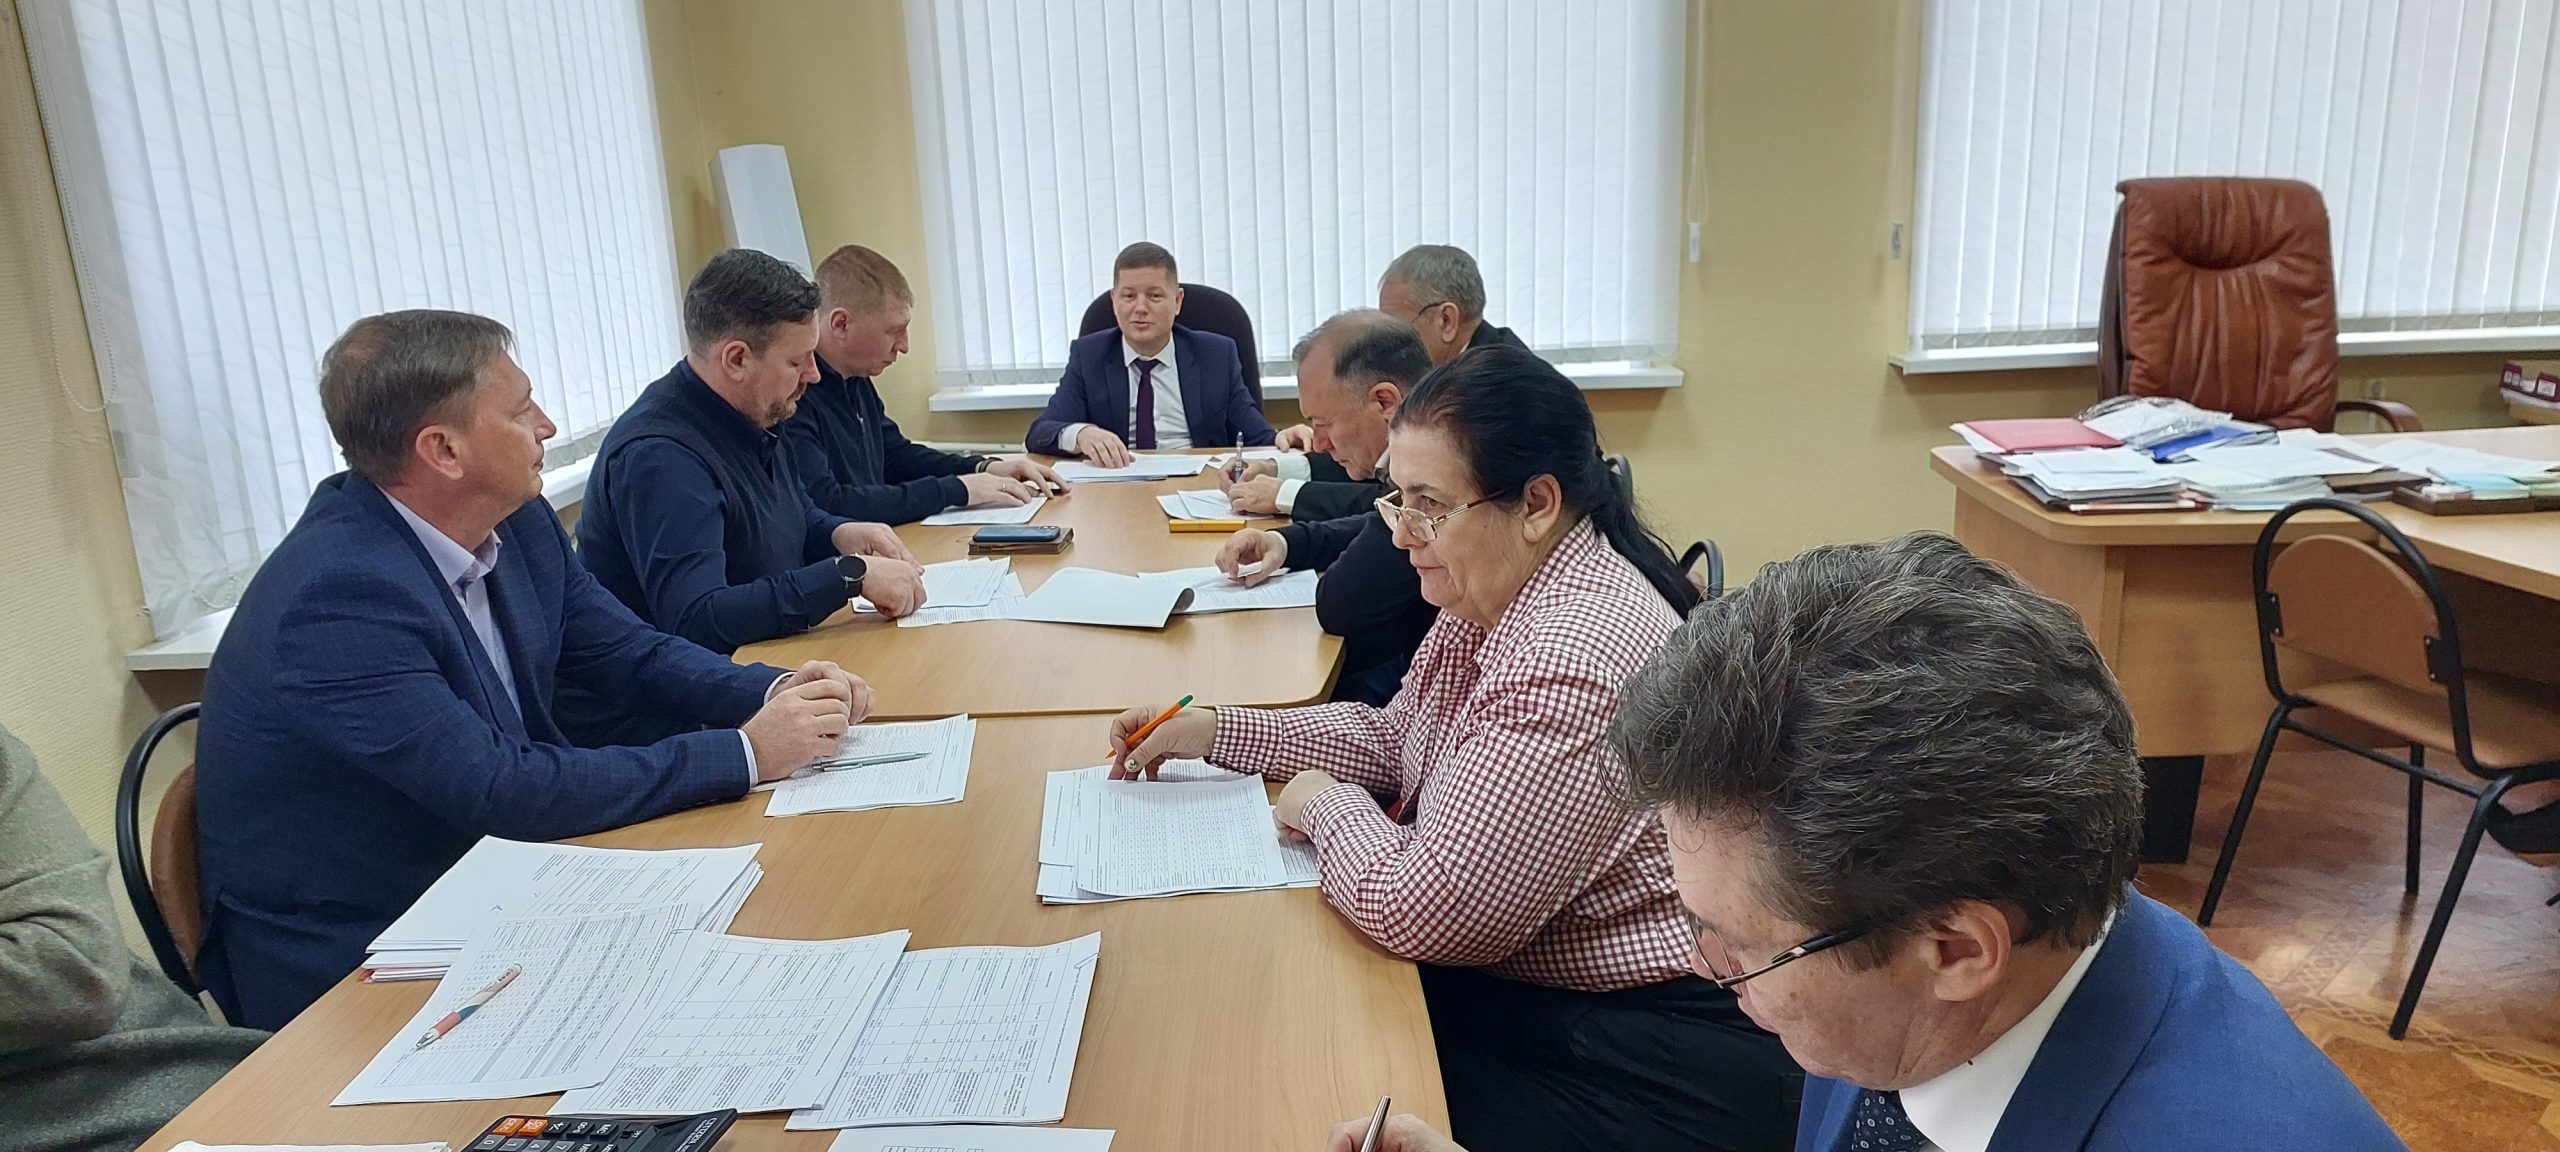 Вчера состоялась очередная рабочая группа по проекту бюджета муниципального образования город Балаково на 2023 года плановый период 2024-2025 г.г.